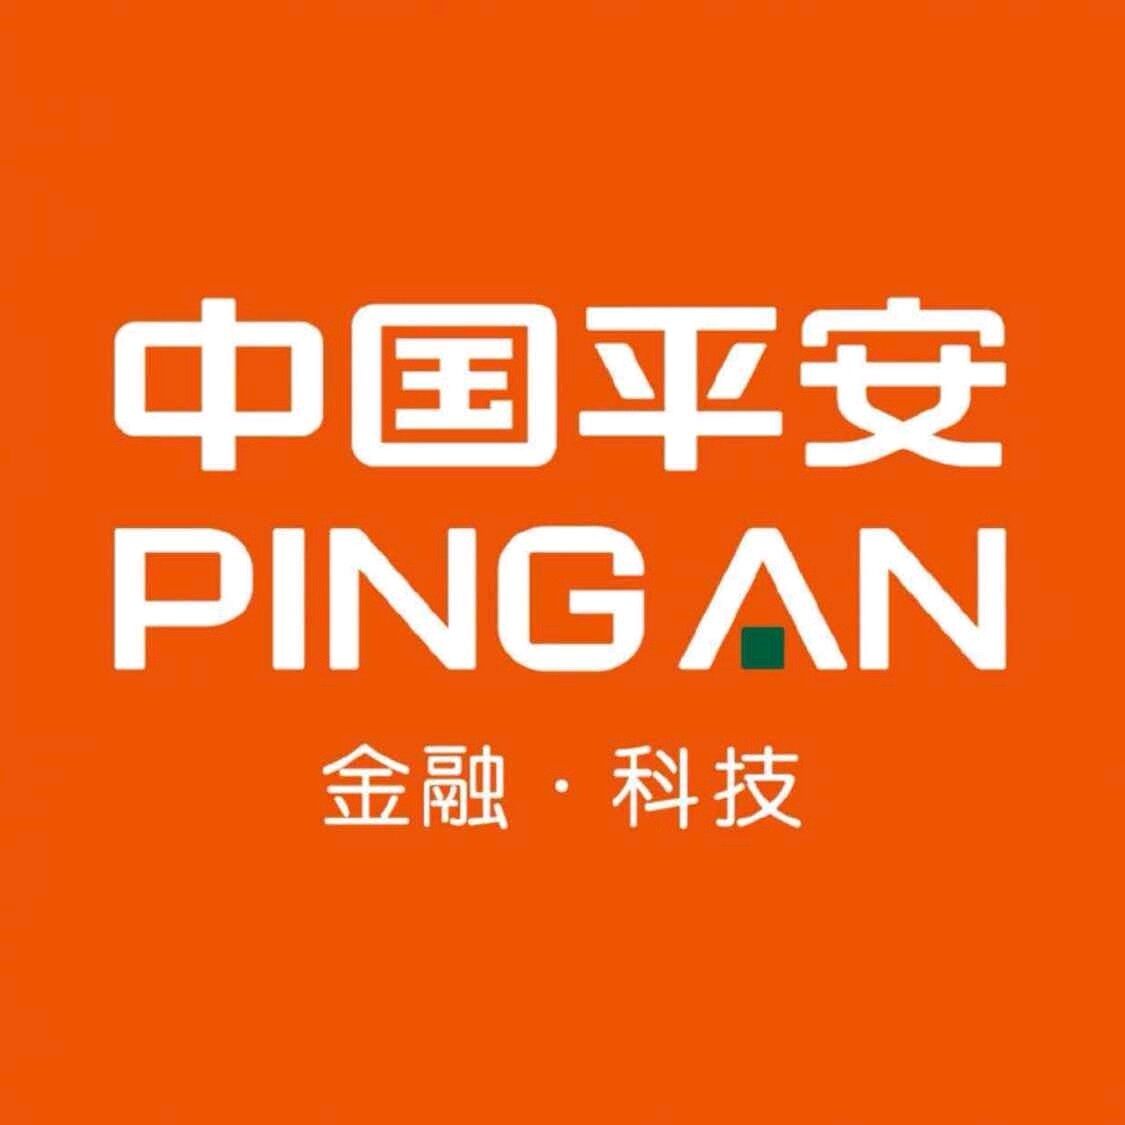 中国平安西安电销中心logo